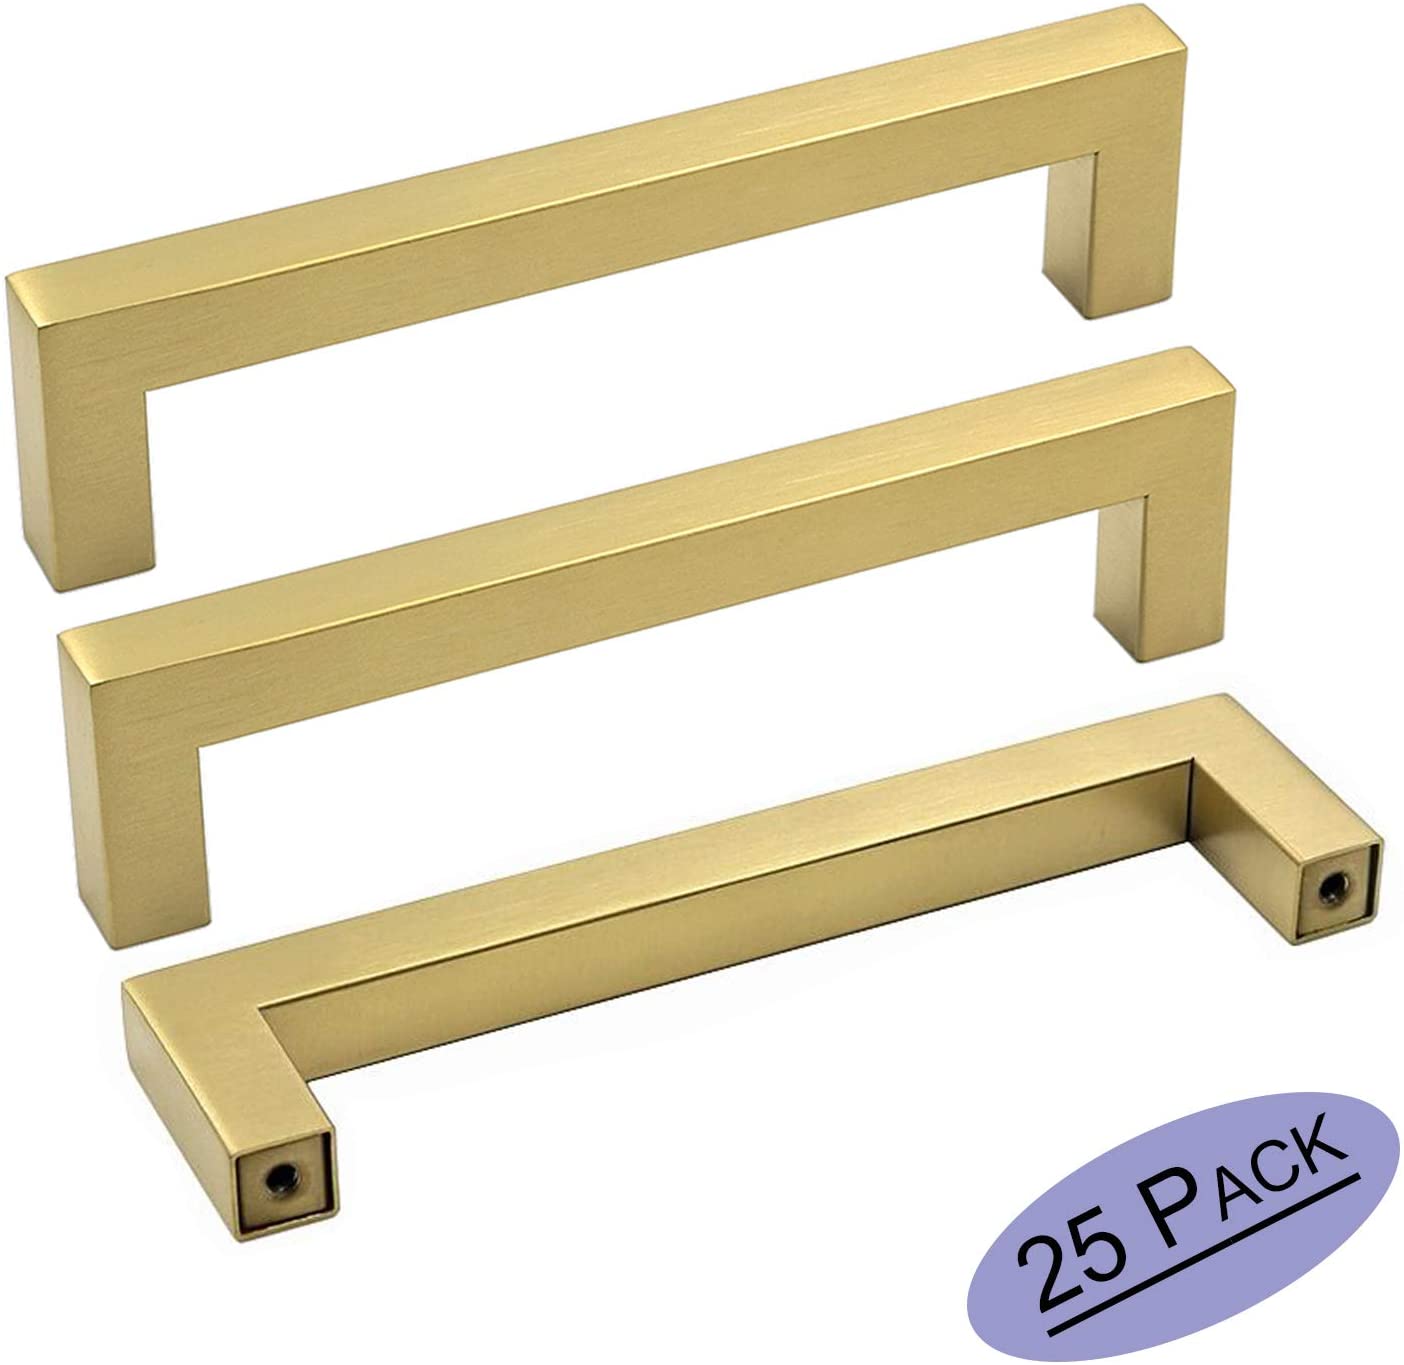 goldenwarm 25 Pack Brass Kitchen Hardware Gold Drawer Pulls - LSJ12GD160 Brushed Gold Cabinet Knobs Square T Bar Dresser Drawer Pulls for Cabinets Bathroom Handles 6-1/4